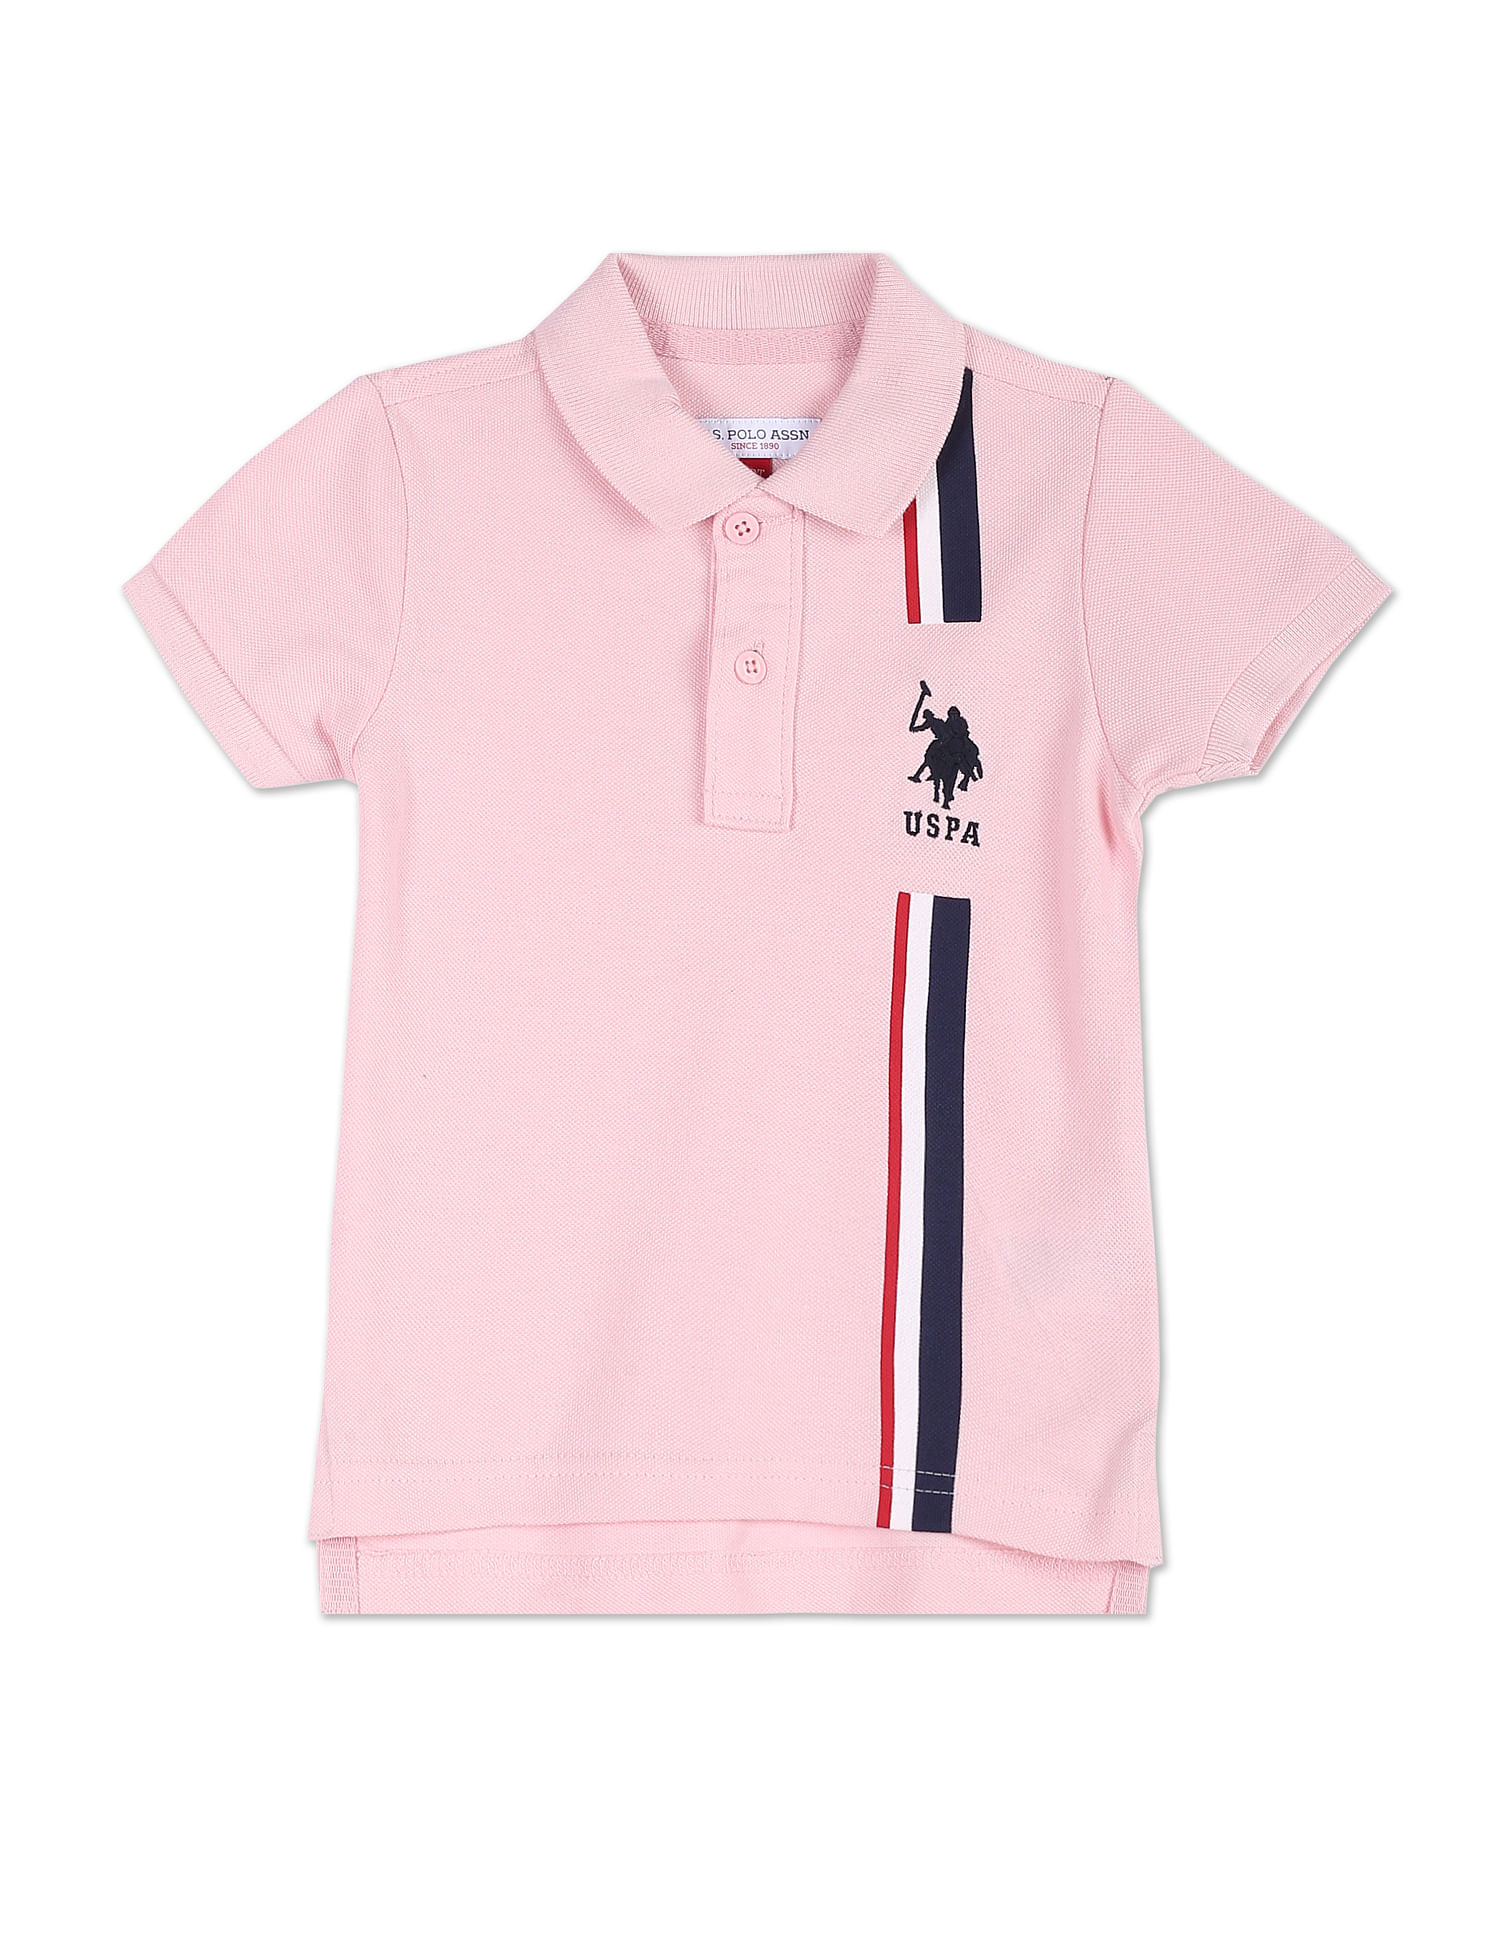 Buy U.S. Polo Assn. Kids Classic Stripe Pique Polo Shirt - NNNOW.com